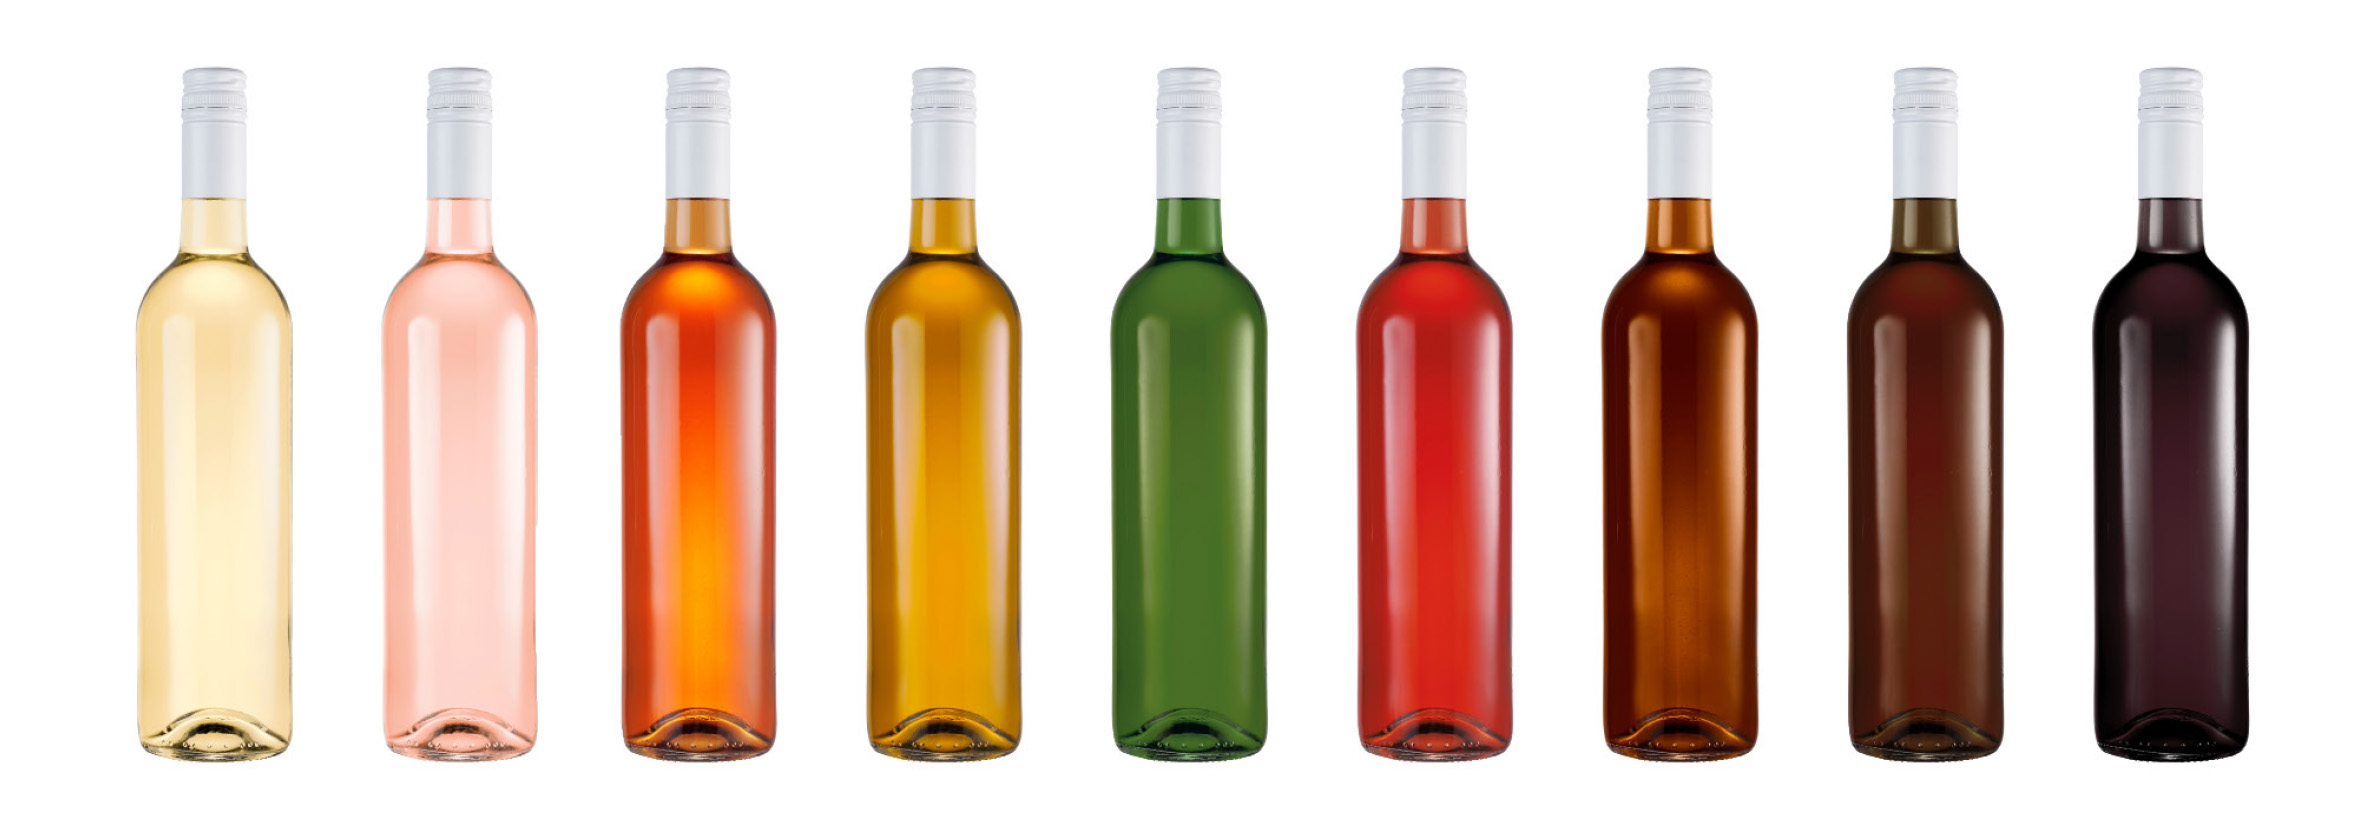 Production et consommation mondiale de vin par couleurs : comprendre les changements